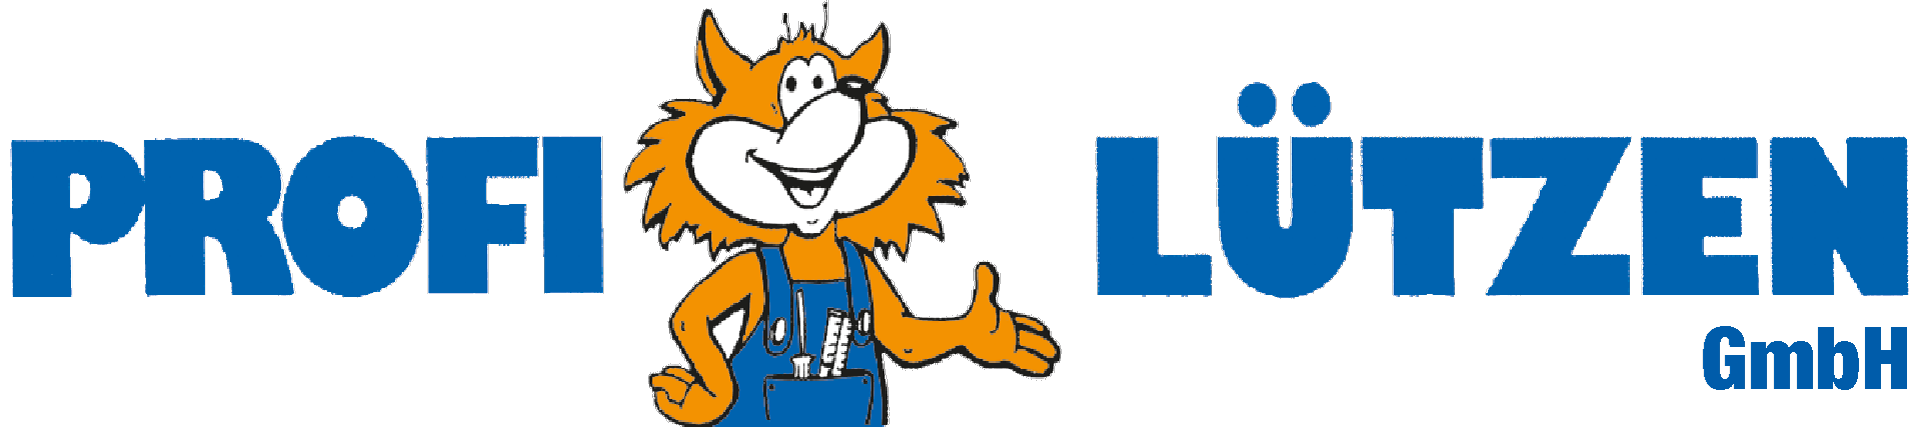 Profi Lützen GmbH Logo